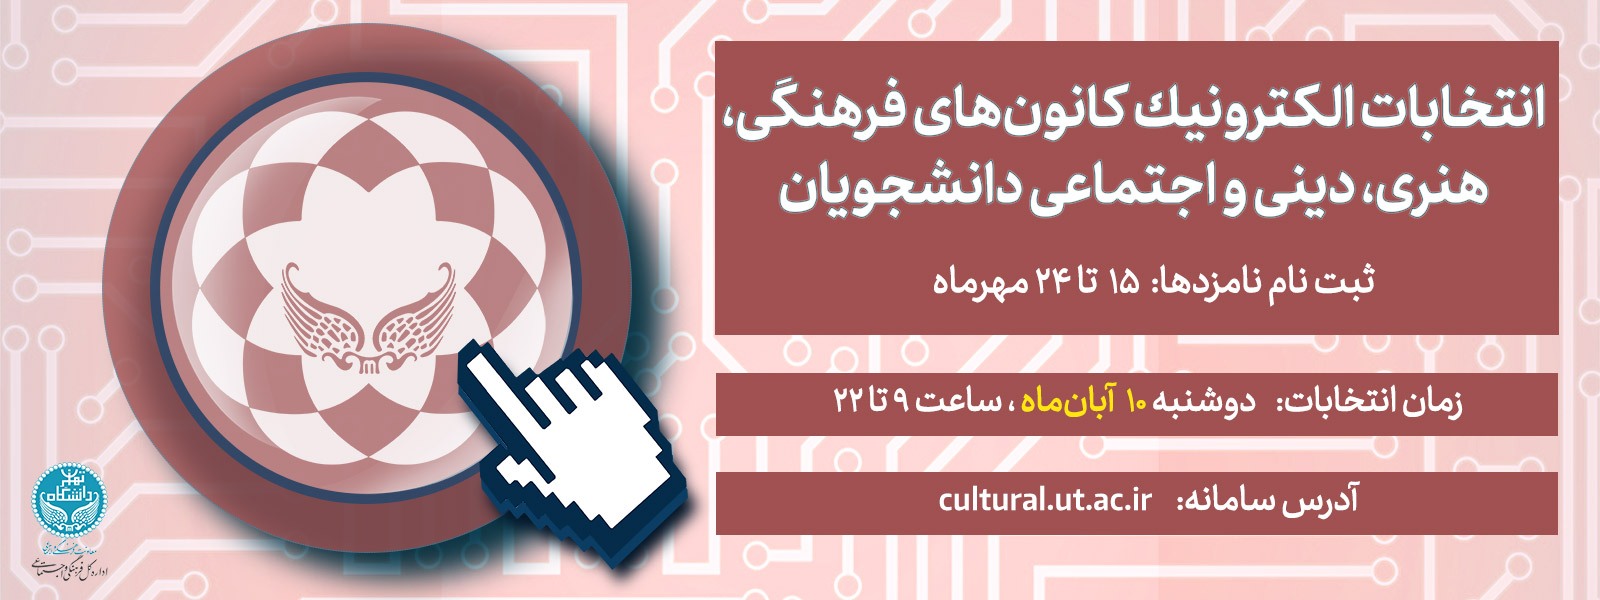 آخرین مهلت ثبت نام انتخابات شورای مرکزی کانون های فرهنگی دانشگاه تهران